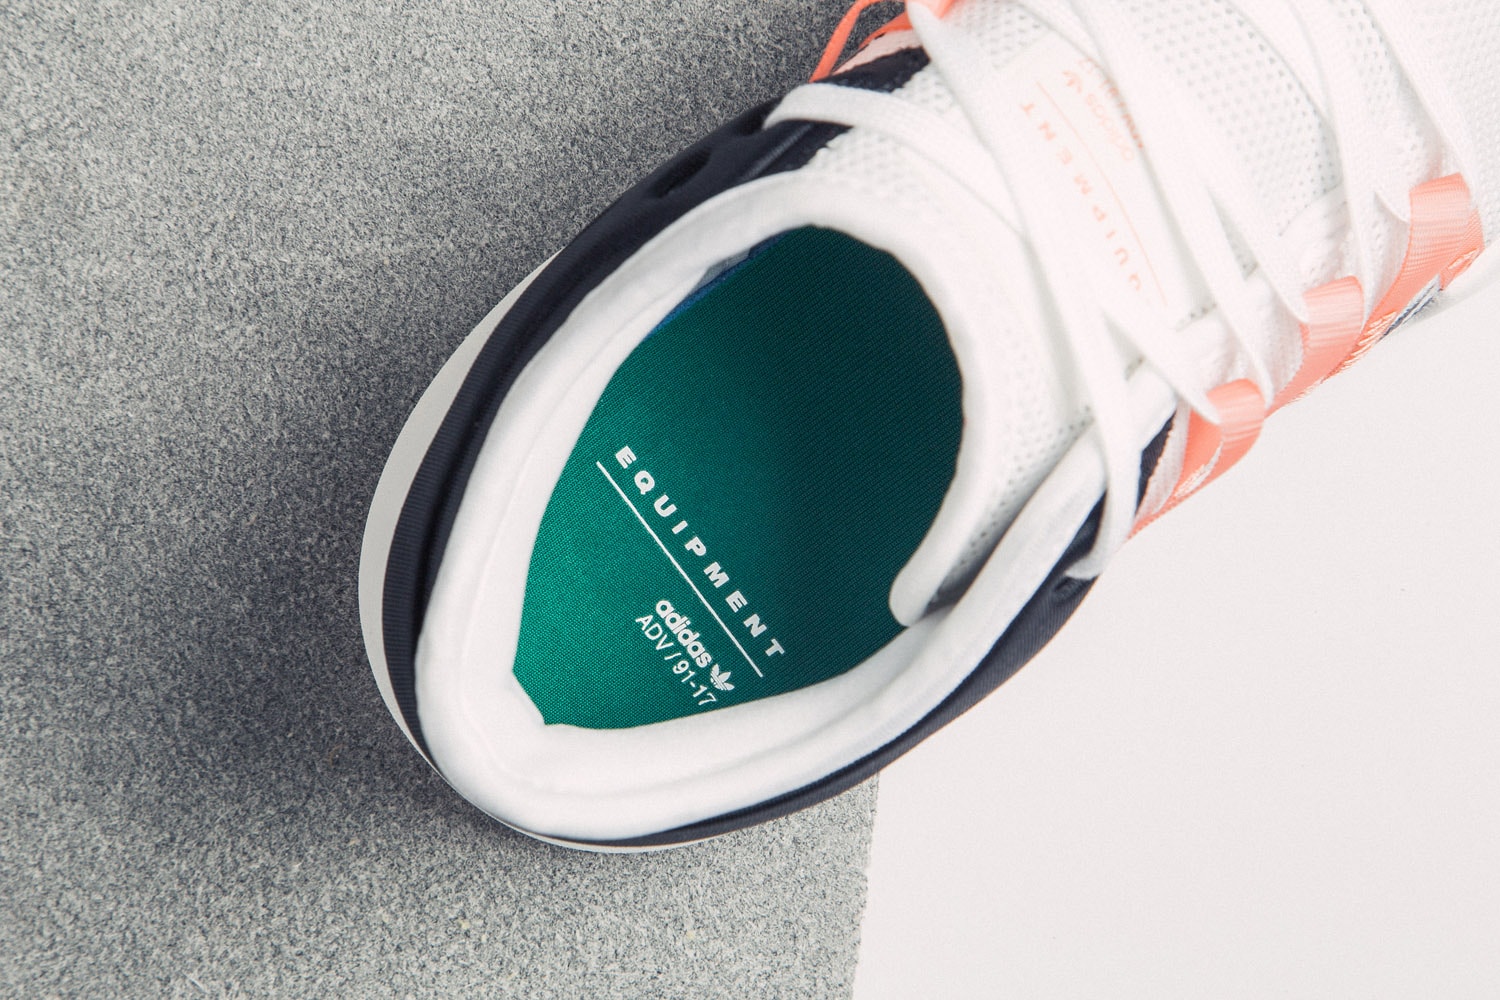 adidas Originals EQT Racing ADV "Chalk Coral" HBX HBXWMN Sneakers Shoes